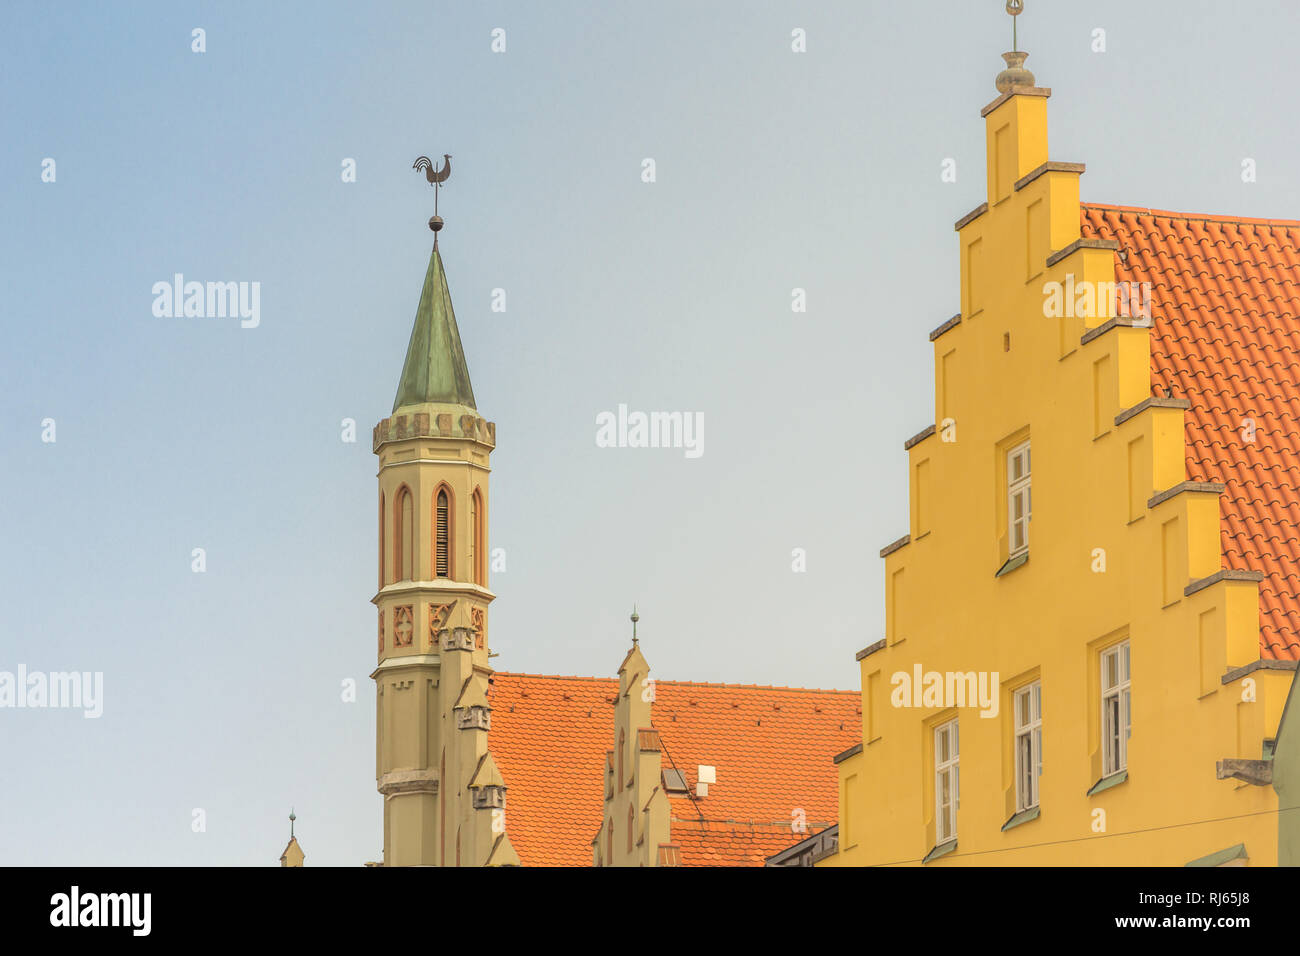 Das Rathaus in Landshut, Turm, Turmspitze mit Wetterhahn, Detailansicht Stock Photo